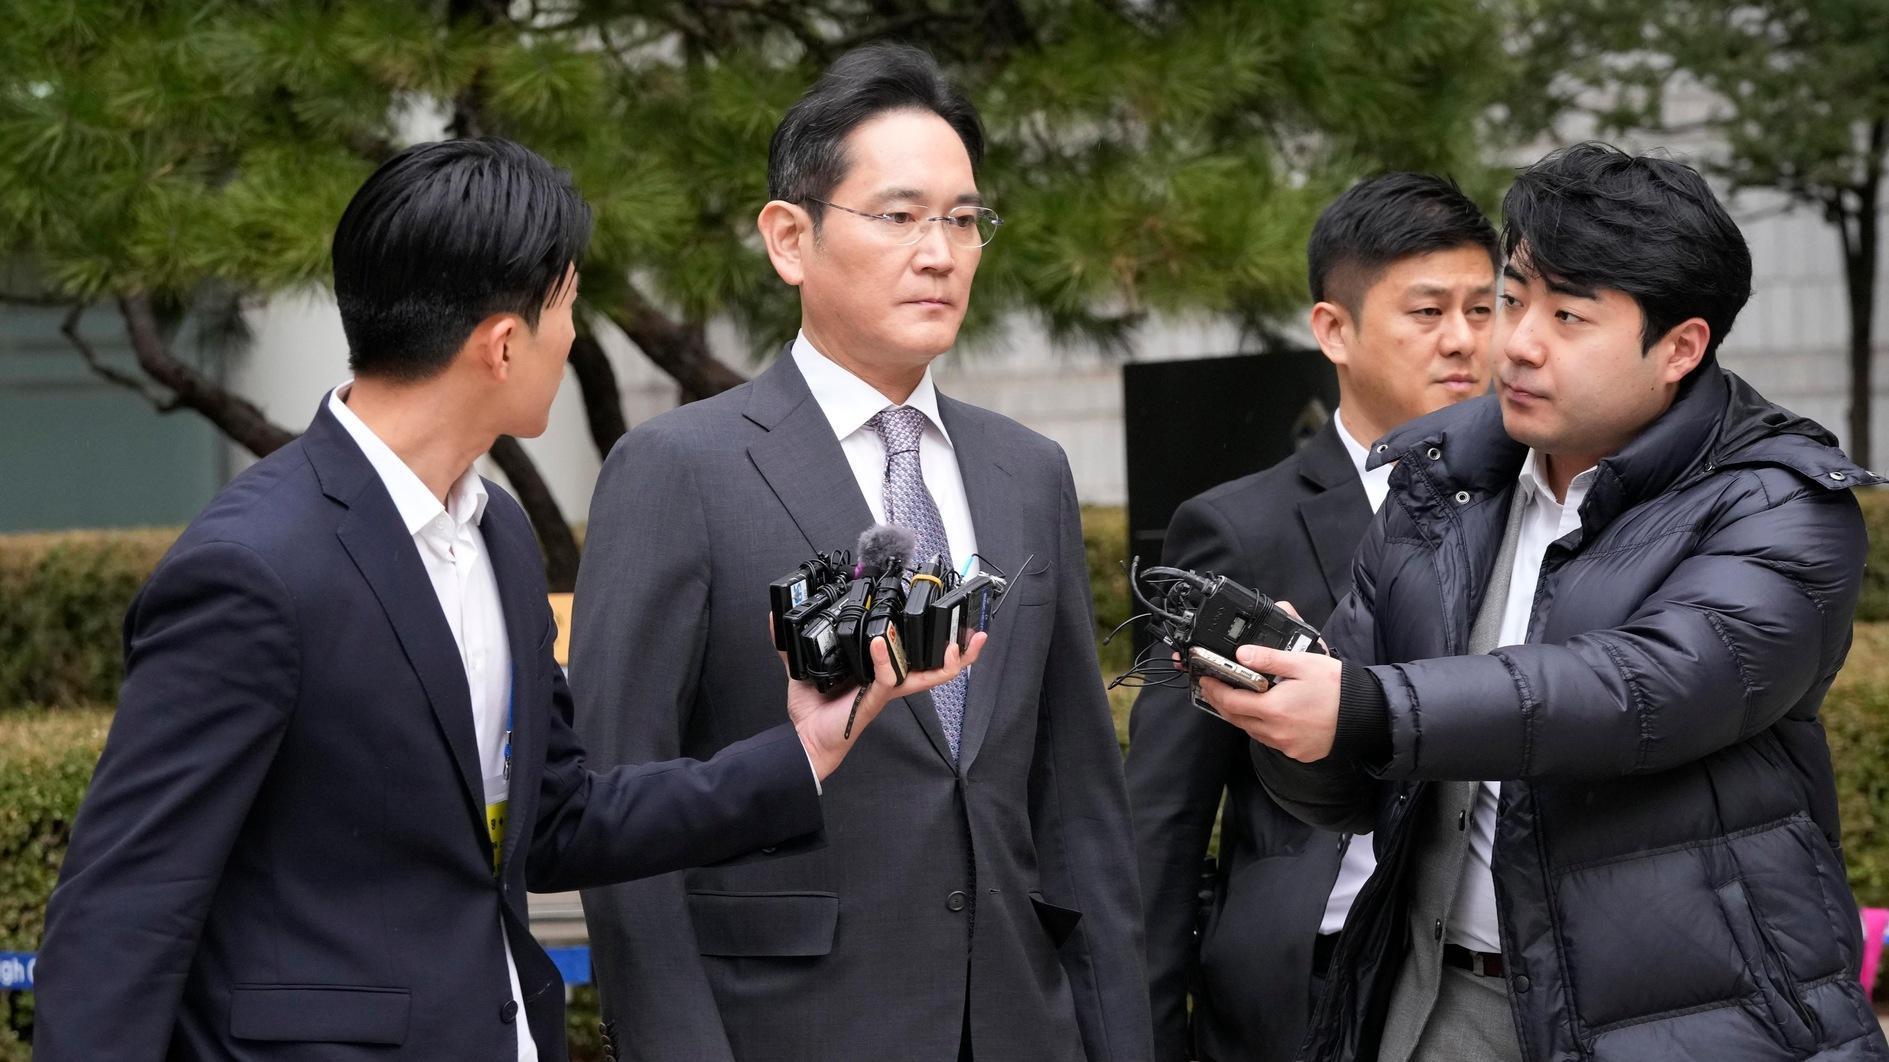 Zuid-Koreaanse rechtbank spreekt Samsung-chef vrij van fusiezaak uit 2015